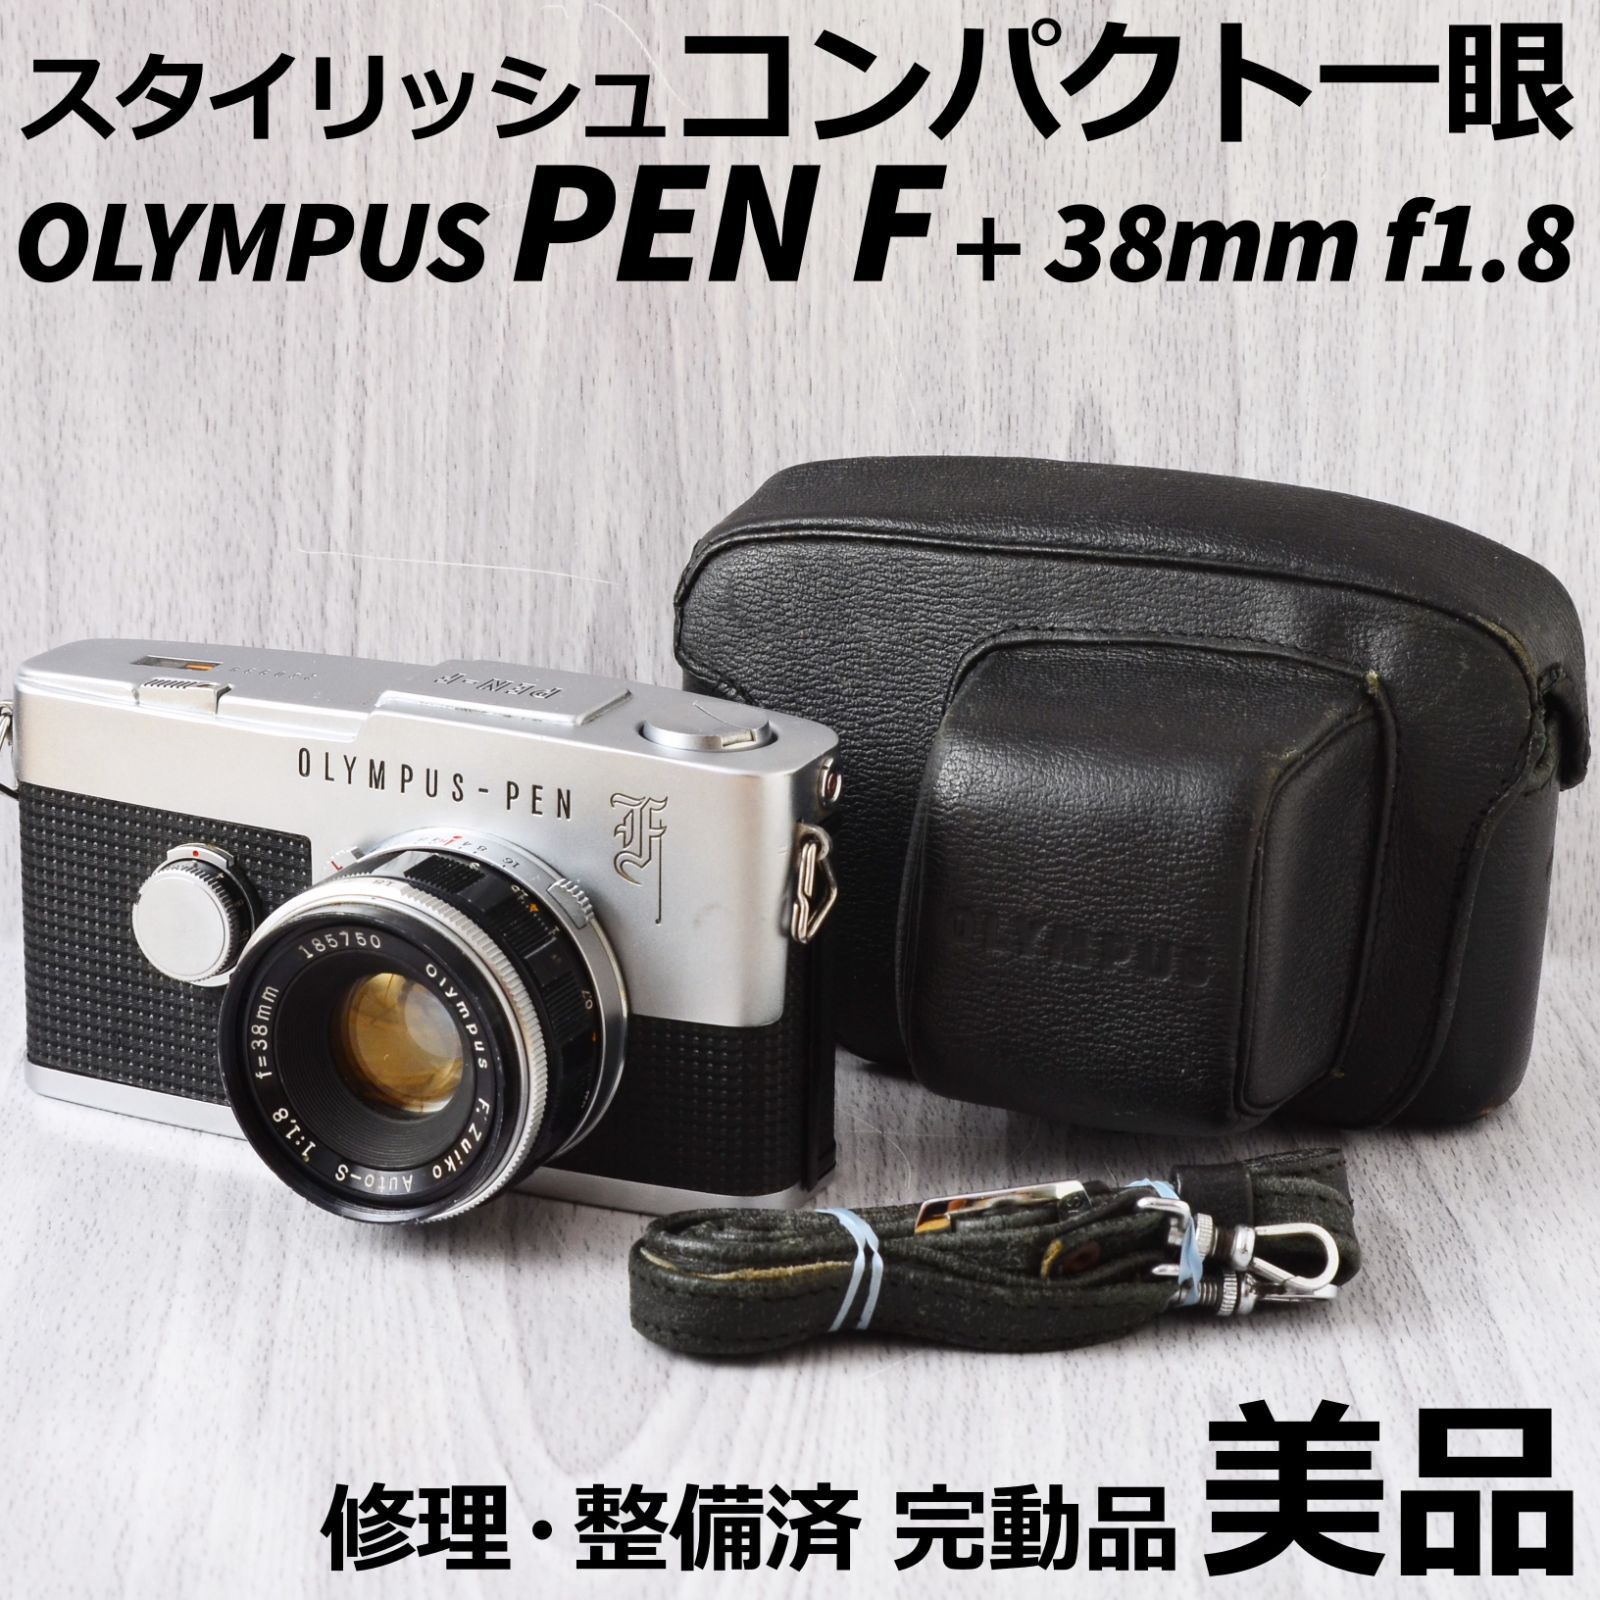 3094☆分解整備品です♪☆ OLYMPUS PEN FT 38mm F1.8 - www